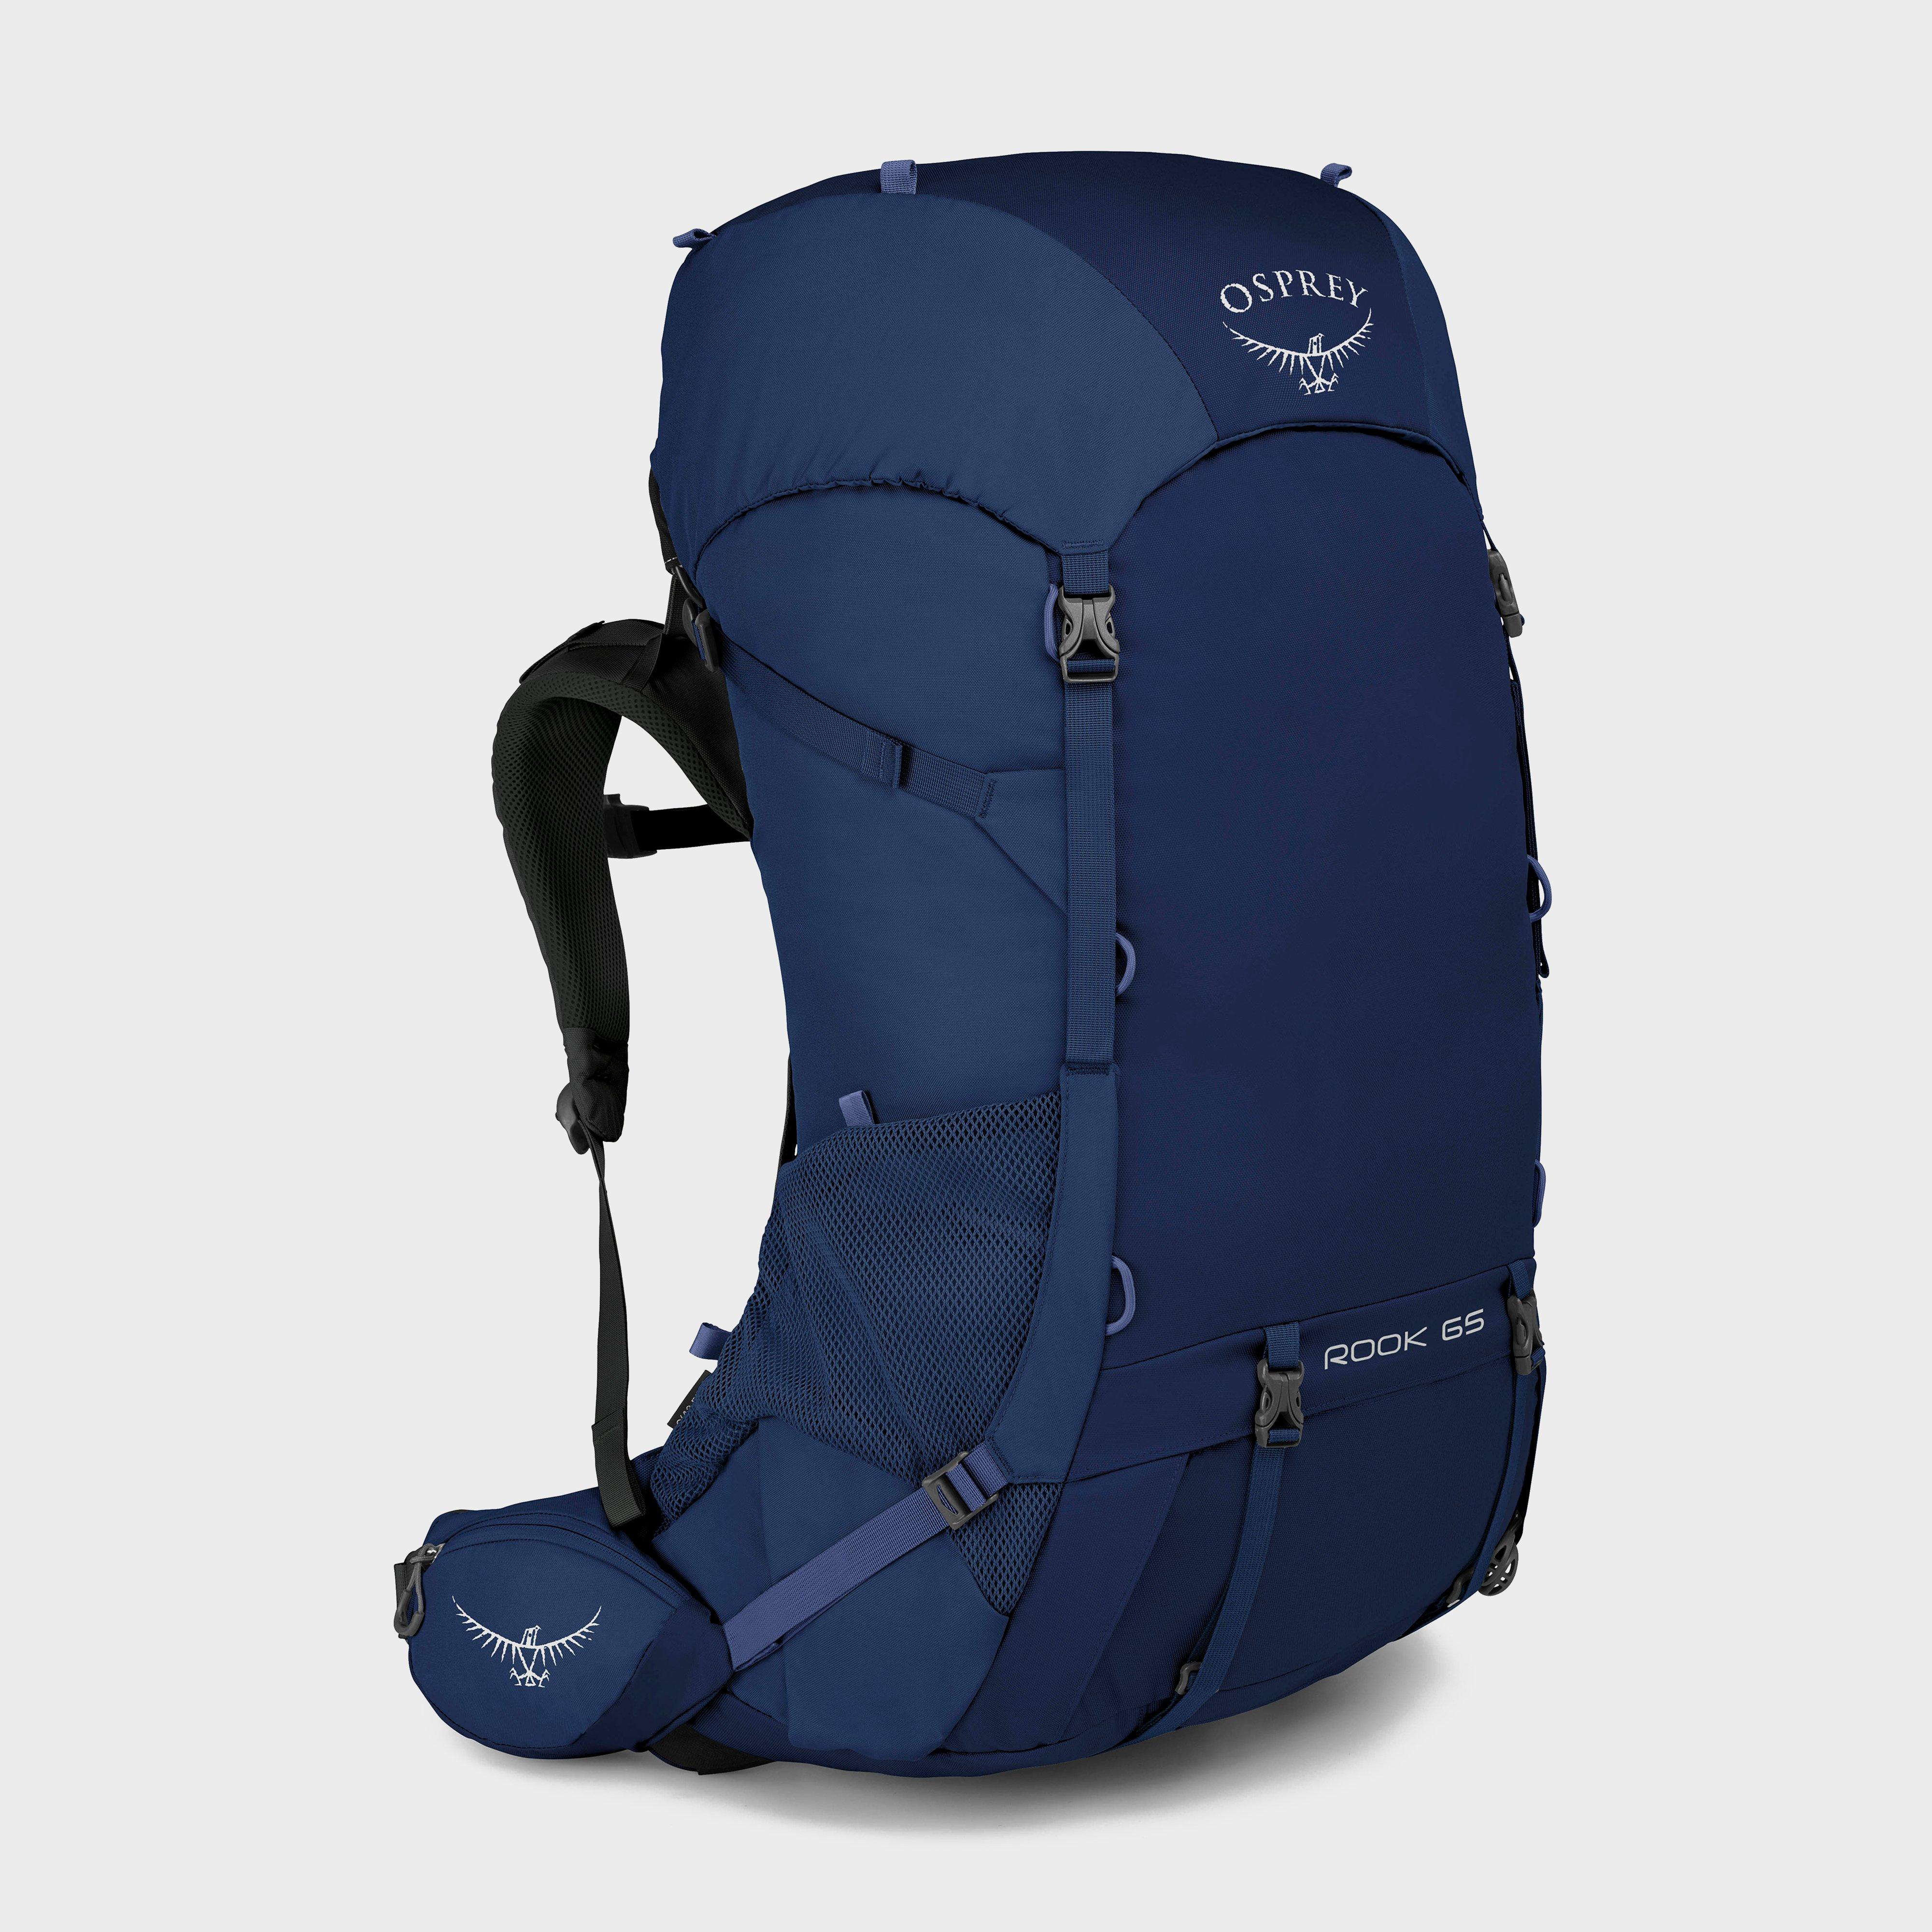 Osprey Rook 65 Litre Backpack - Blu$/blu$  Blu$/blu$